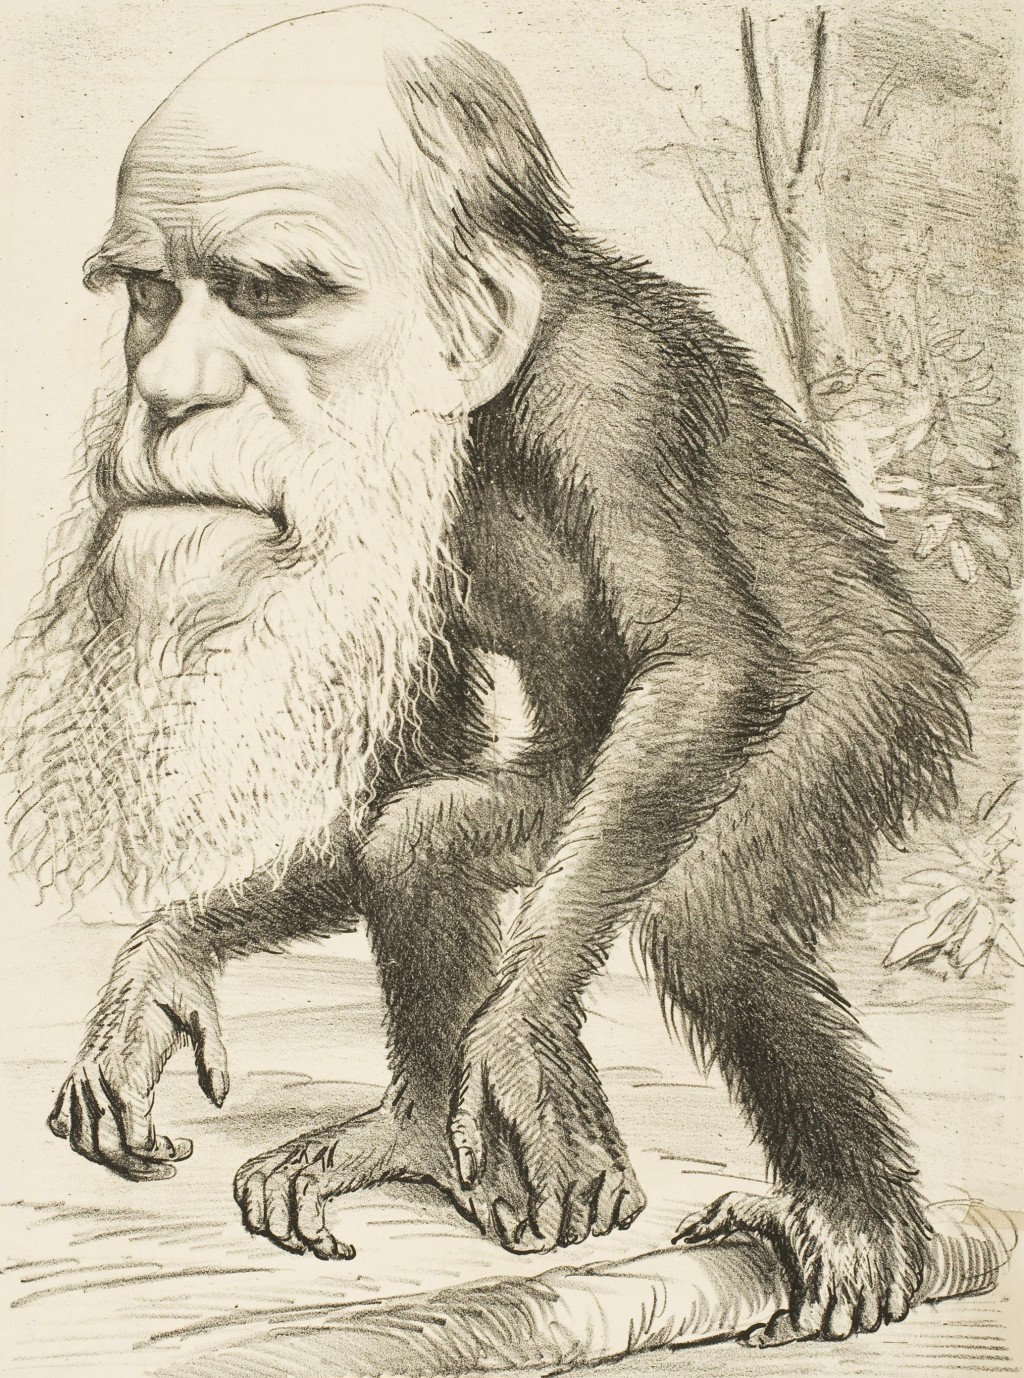 Astfel era înfăţişat adeseori în prea vremii Charles Darwin,   de către opozanţii săi,   cei care nu puteau accepta teoriile sale. Era denigrat prin articole şi caricaturi care îl prezentau în chip de maimuţă sau ca un monstru. 